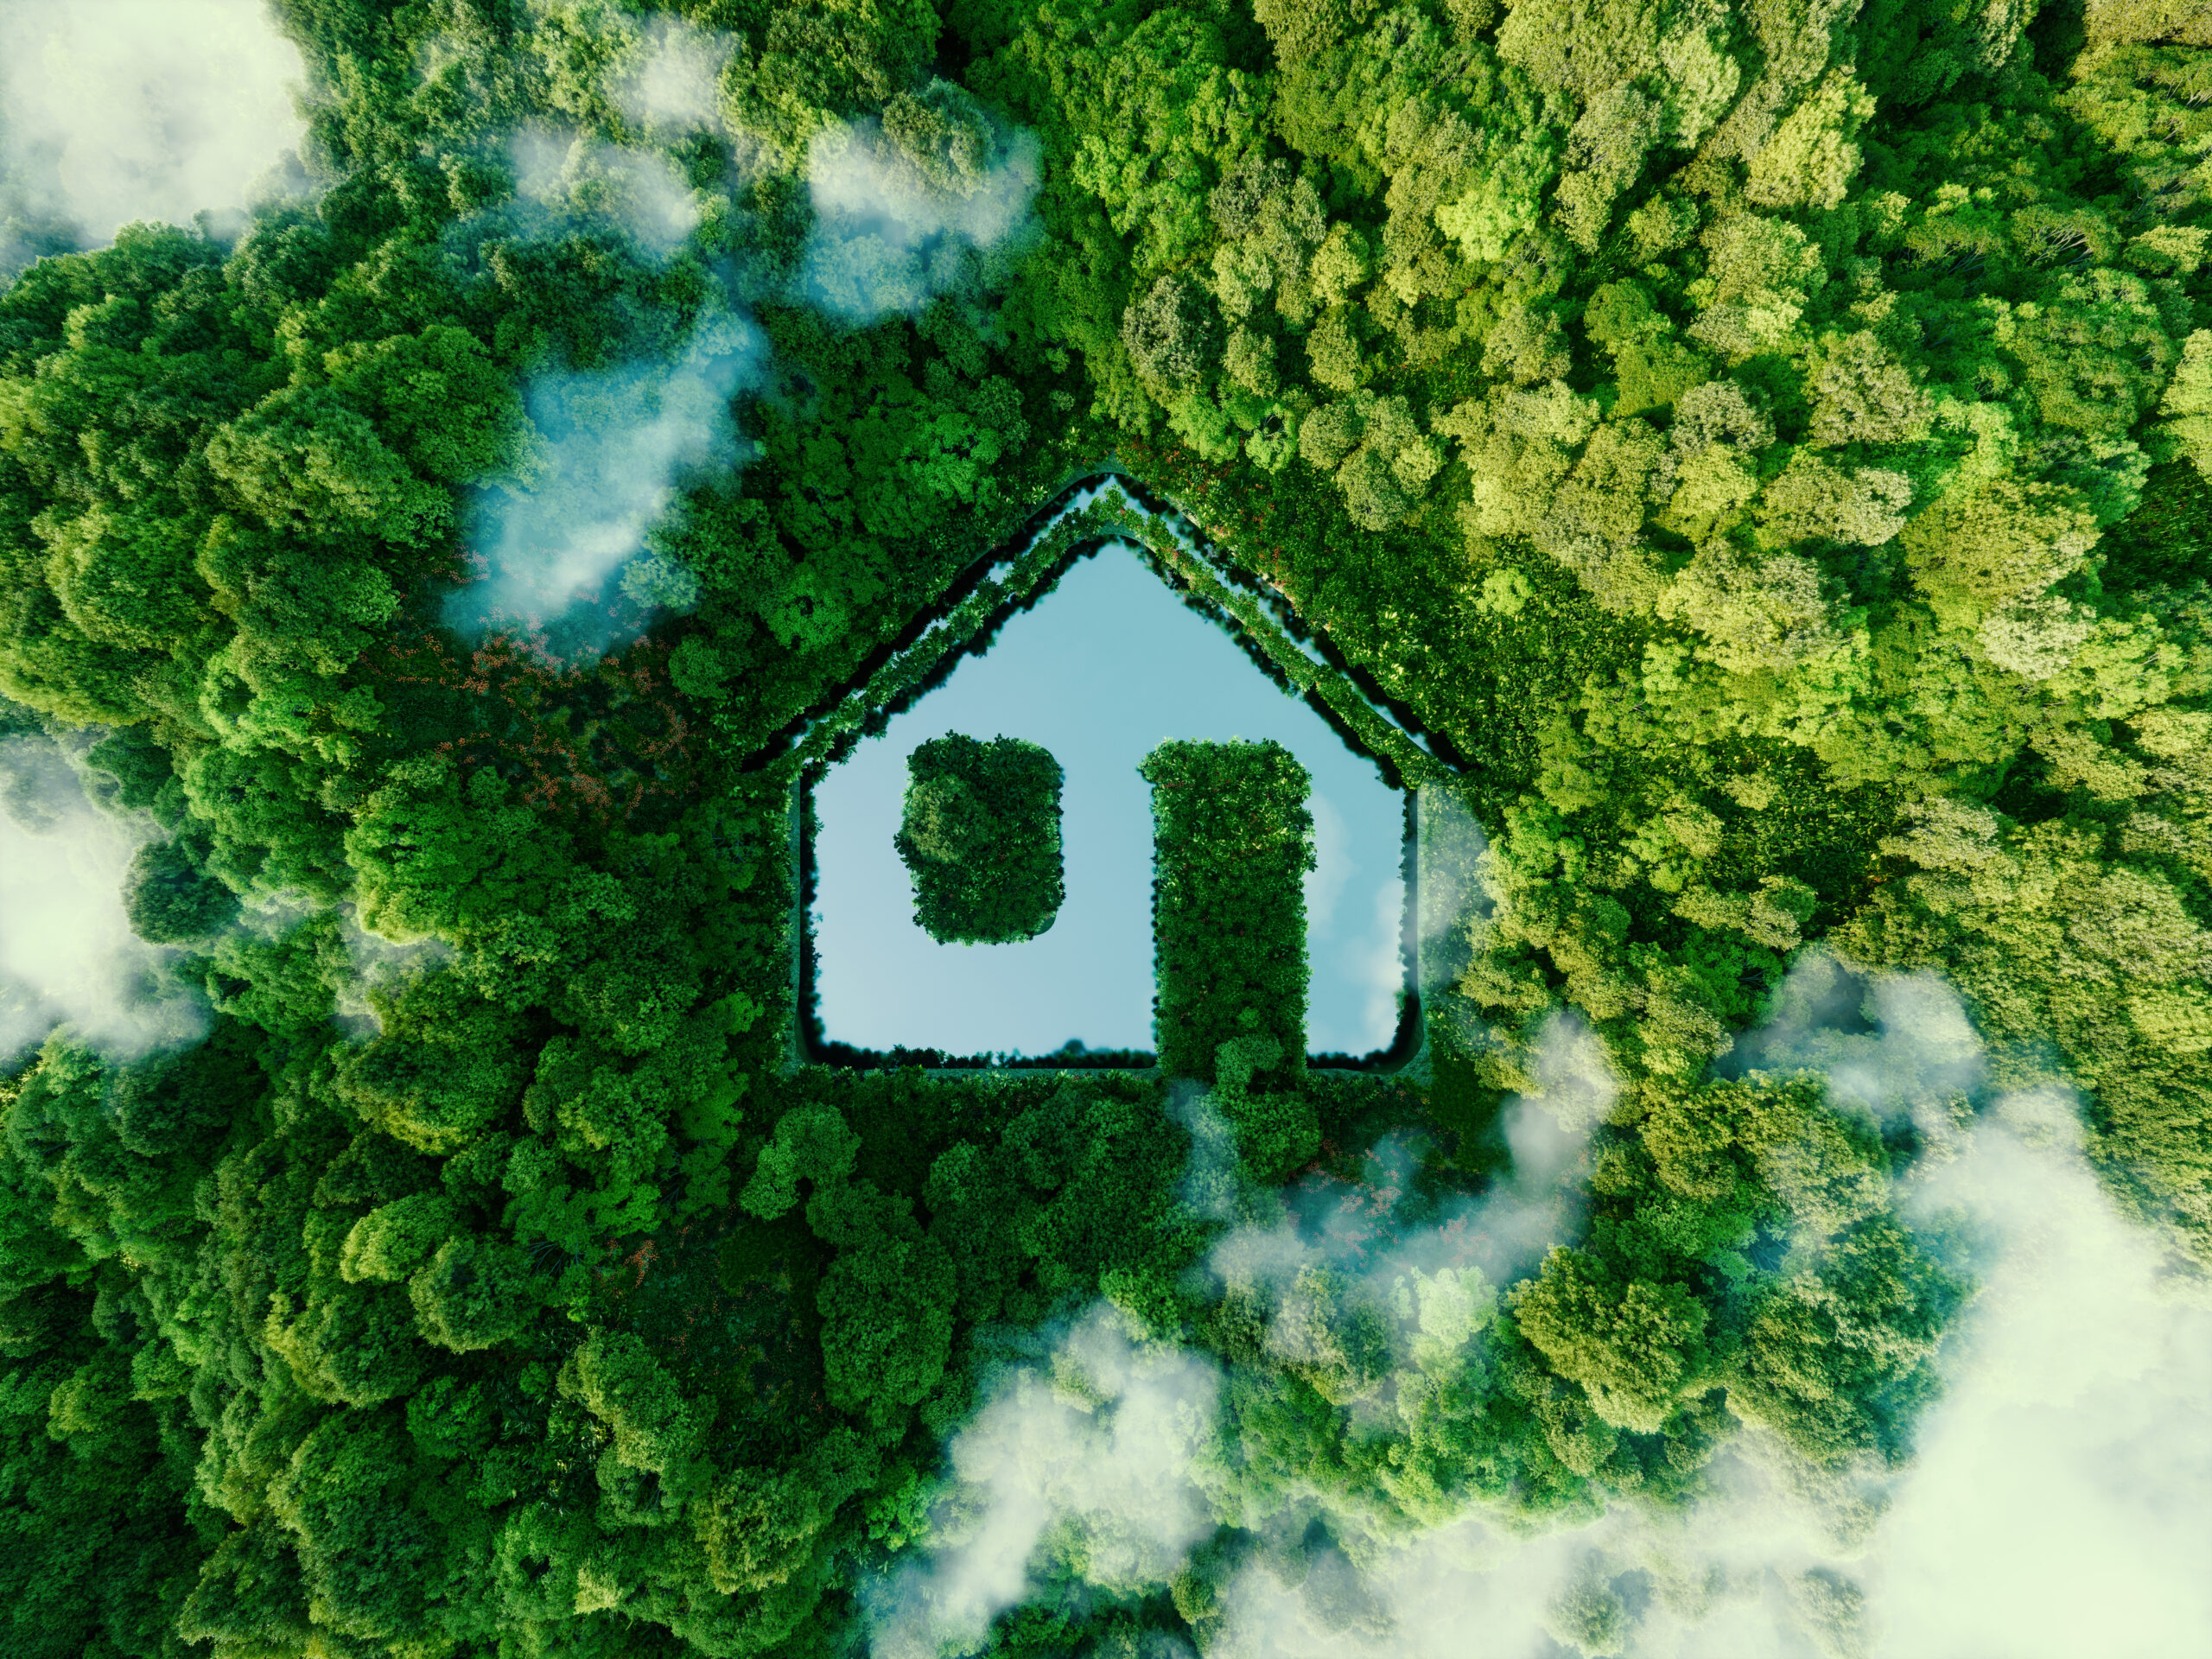 nachhaltiges-bauen-che-home